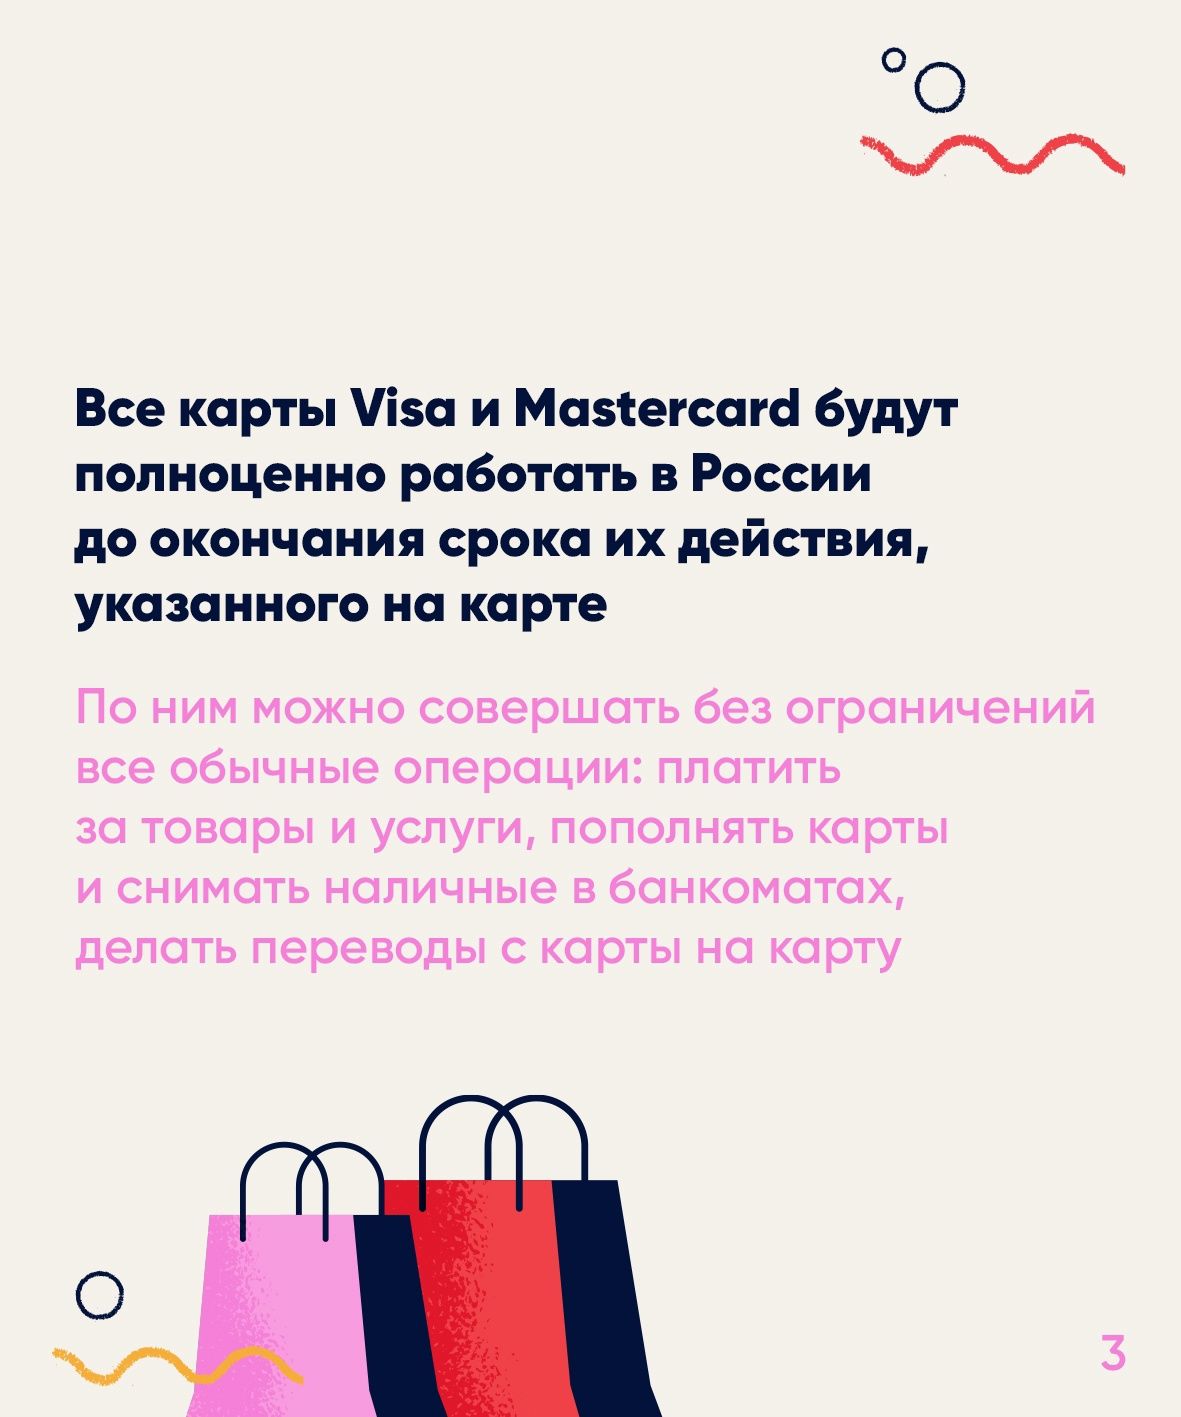 С 10 марта из России ушли платёжные системы Visa и MasterCard